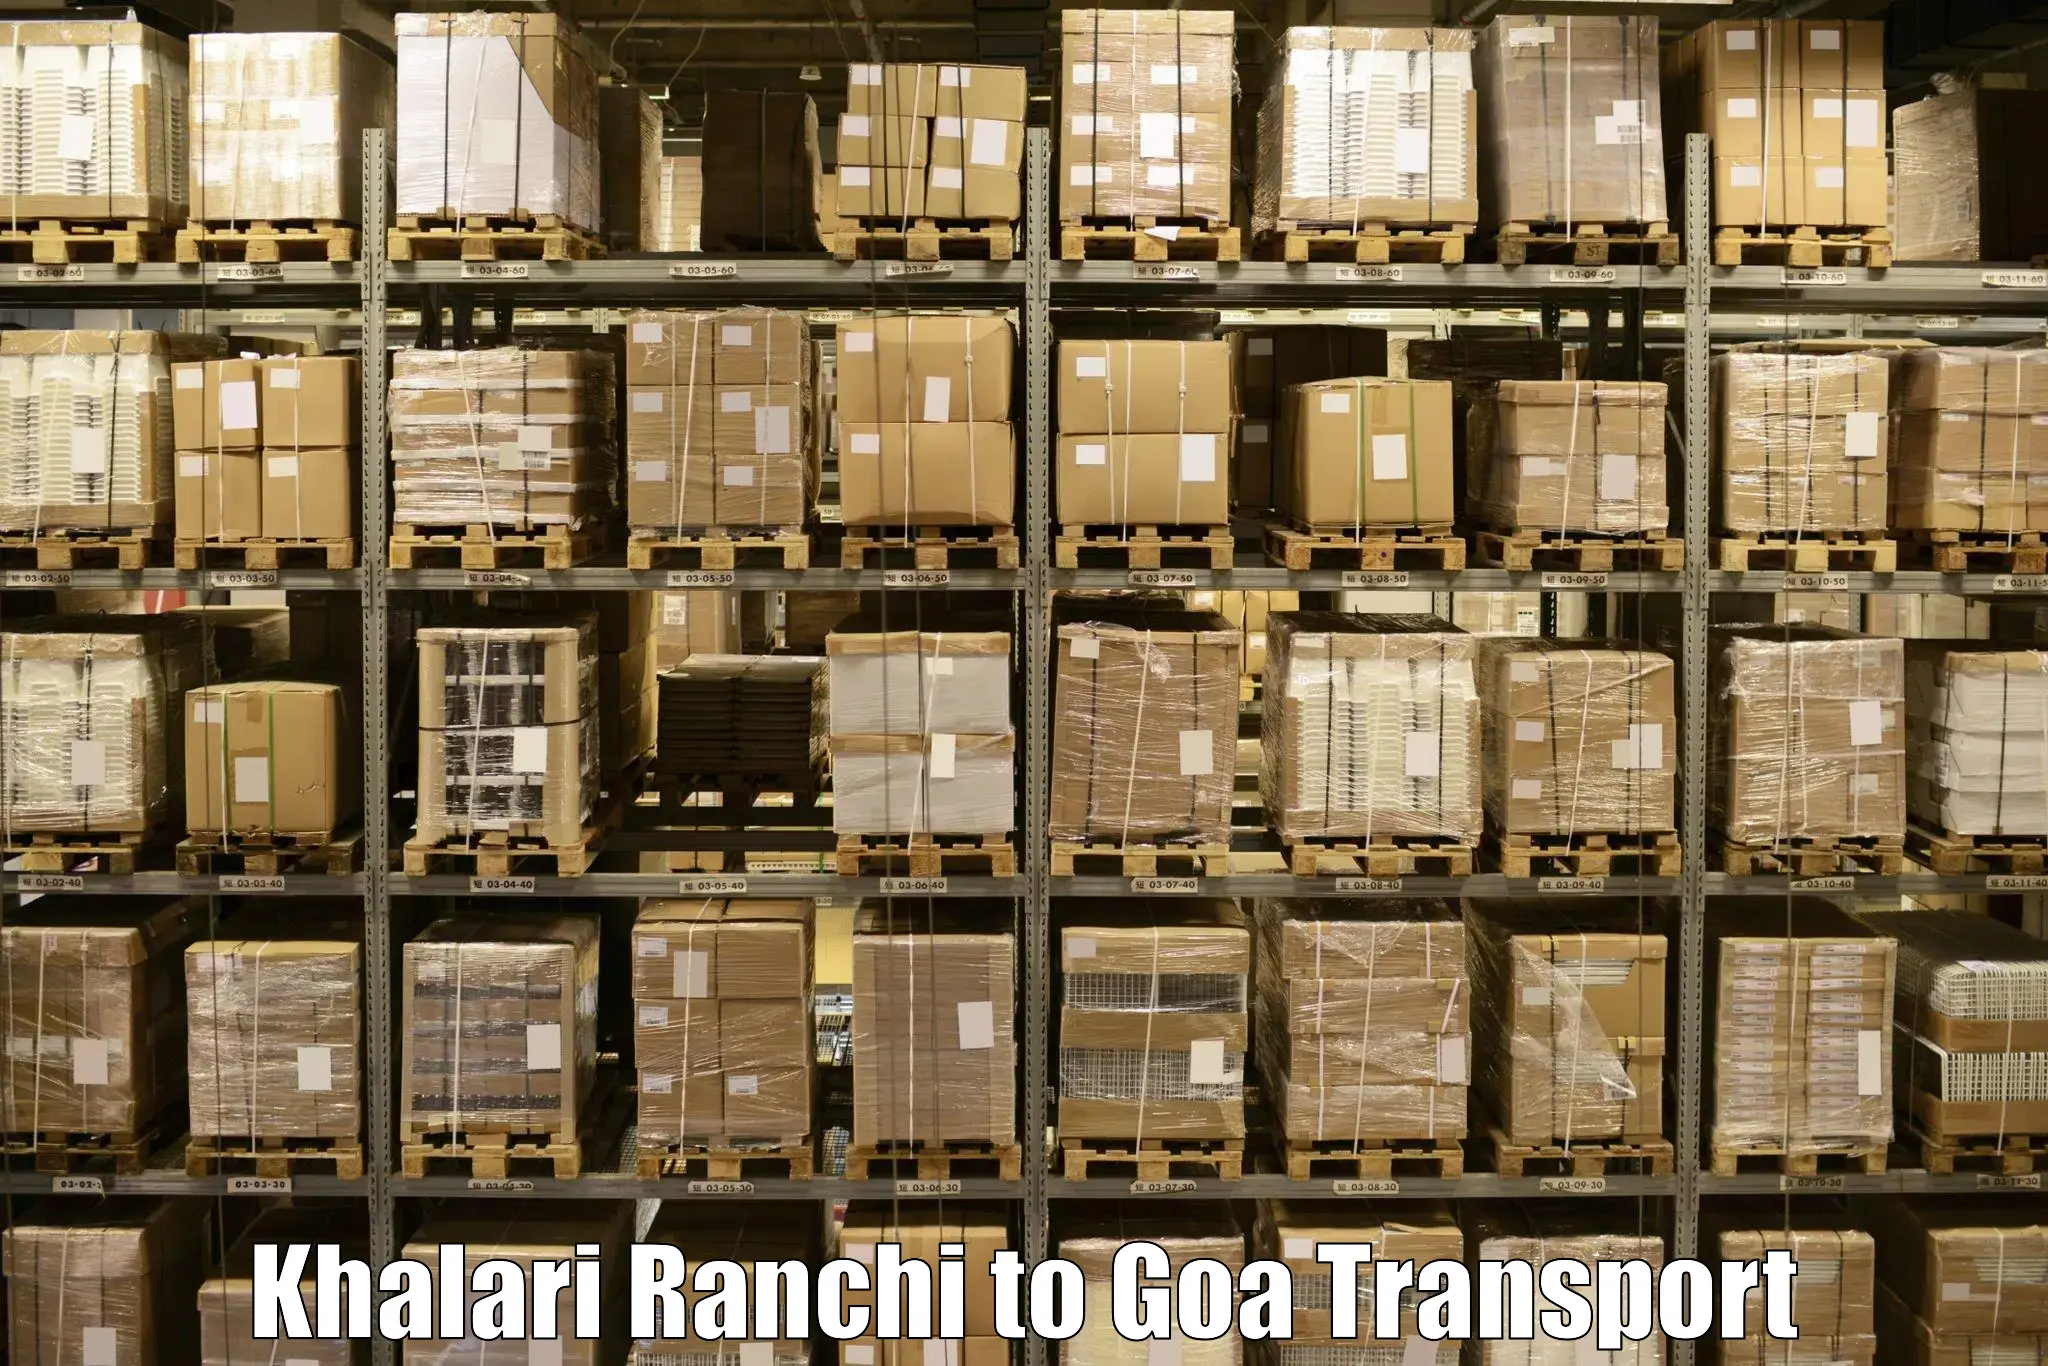 Nearby transport service Khalari Ranchi to Panjim